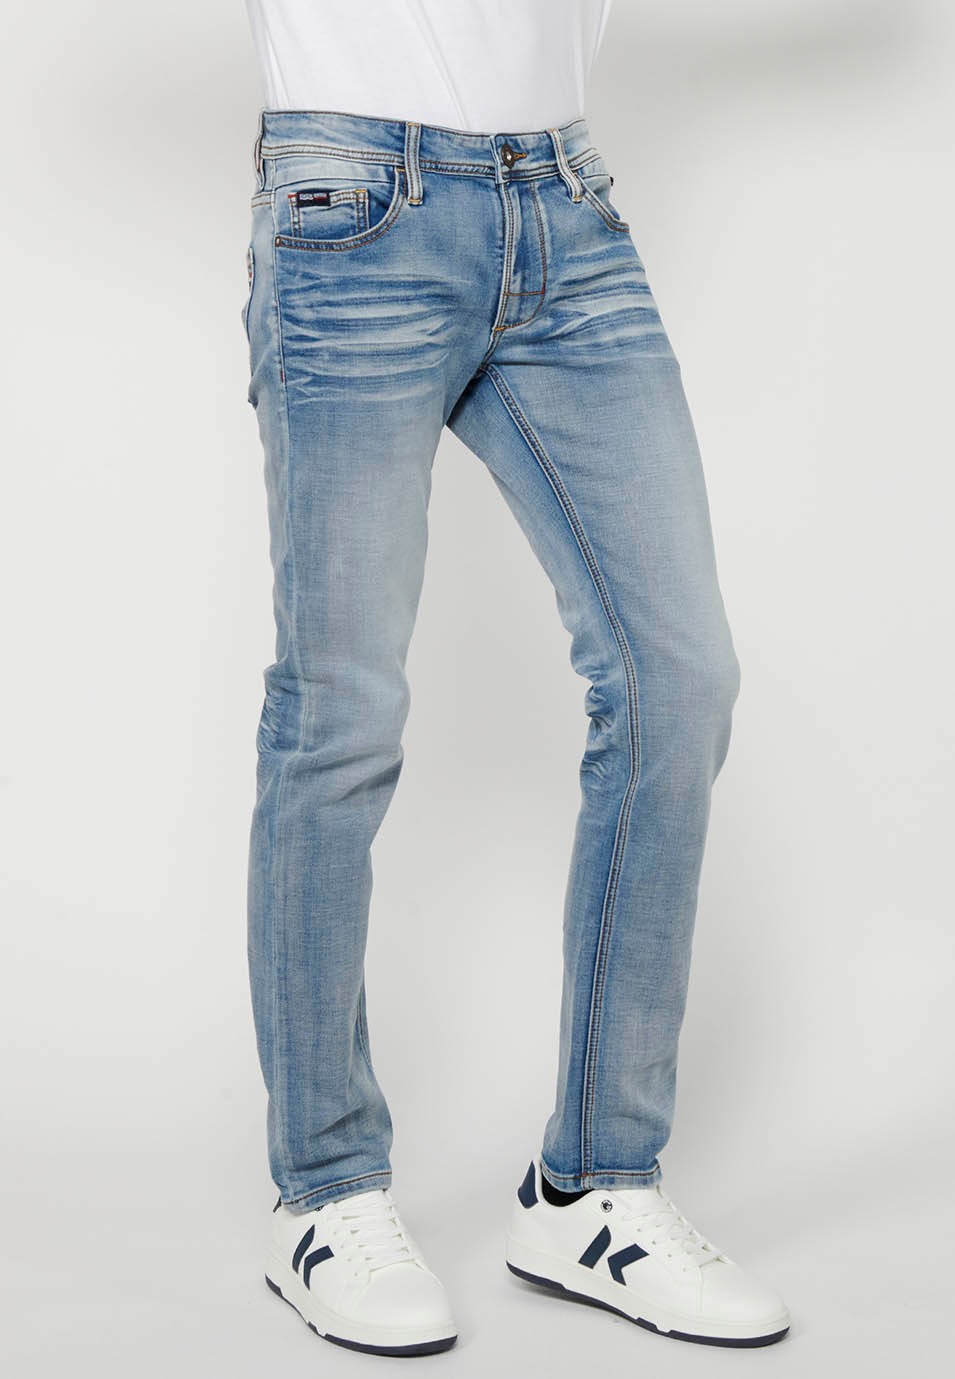 Pantalons denim llarg Slim fit amb Tancament davanter amb cremallera i botó de Color Blau clar per a Home 3